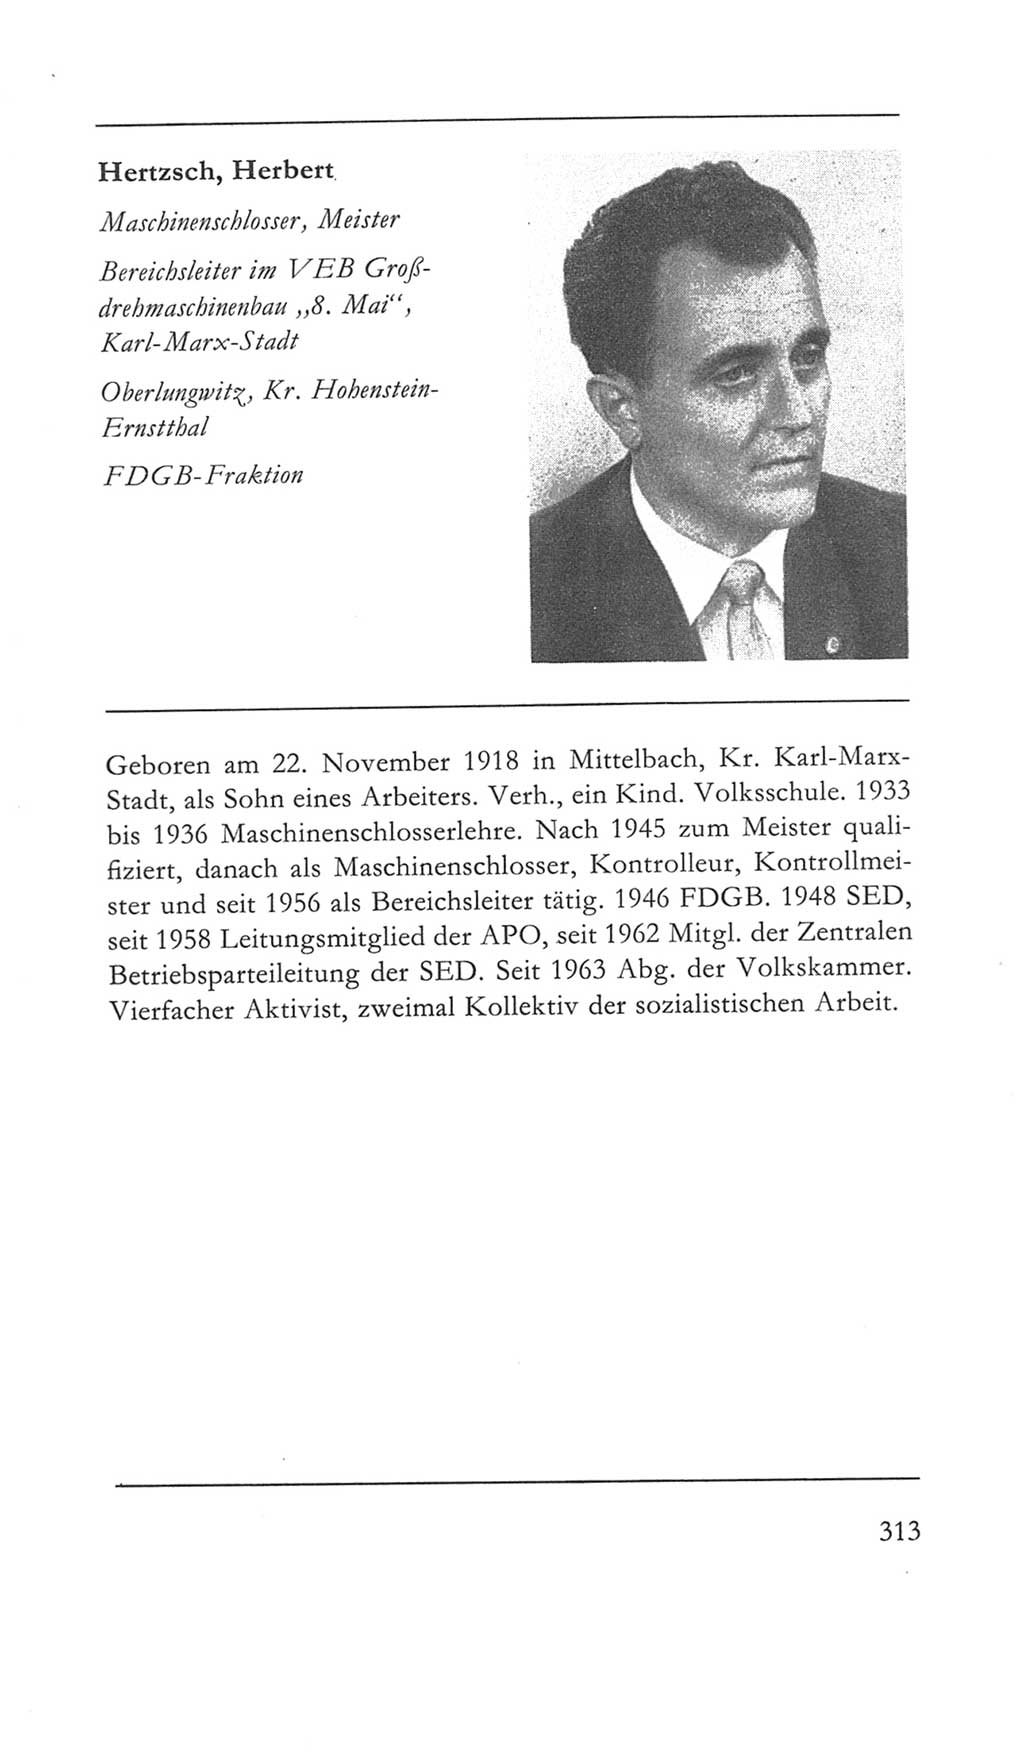 Volkskammer (VK) der Deutschen Demokratischen Republik (DDR) 5. Wahlperiode 1967-1971, Seite 313 (VK. DDR 5. WP. 1967-1971, S. 313)